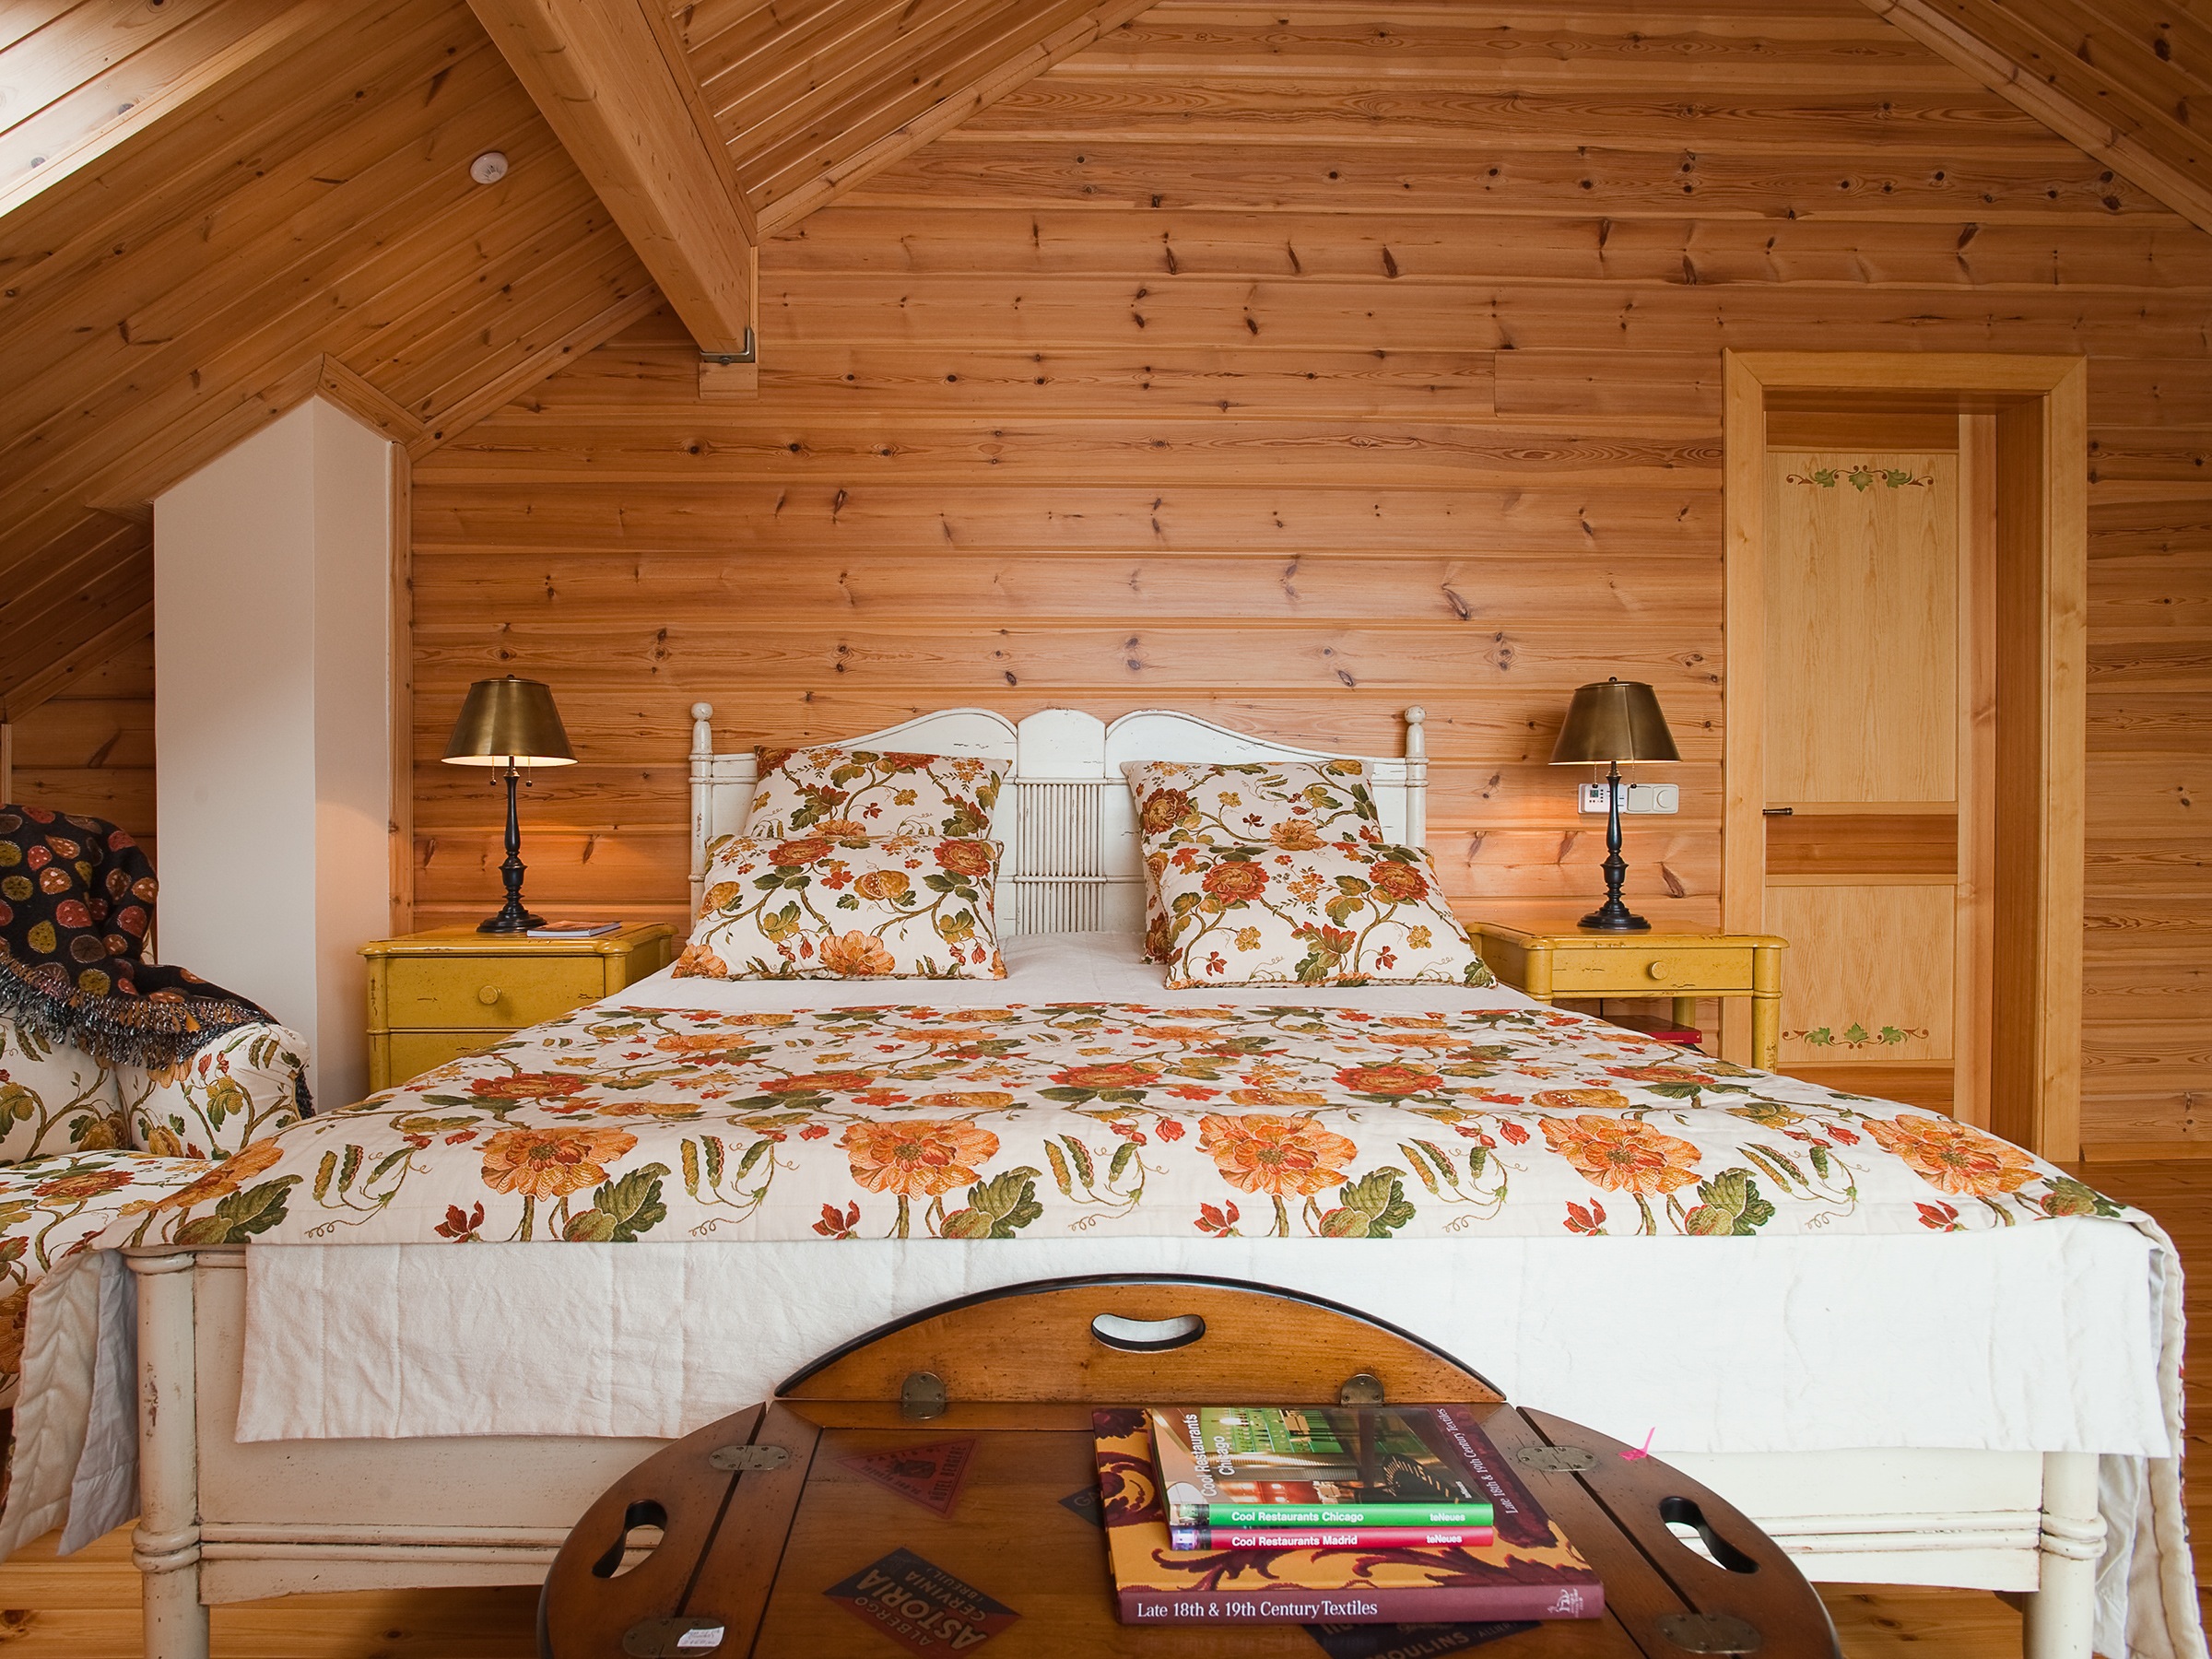 Дизайн спальной комнаты в деревянном доме » Современный дизайн на Vip .